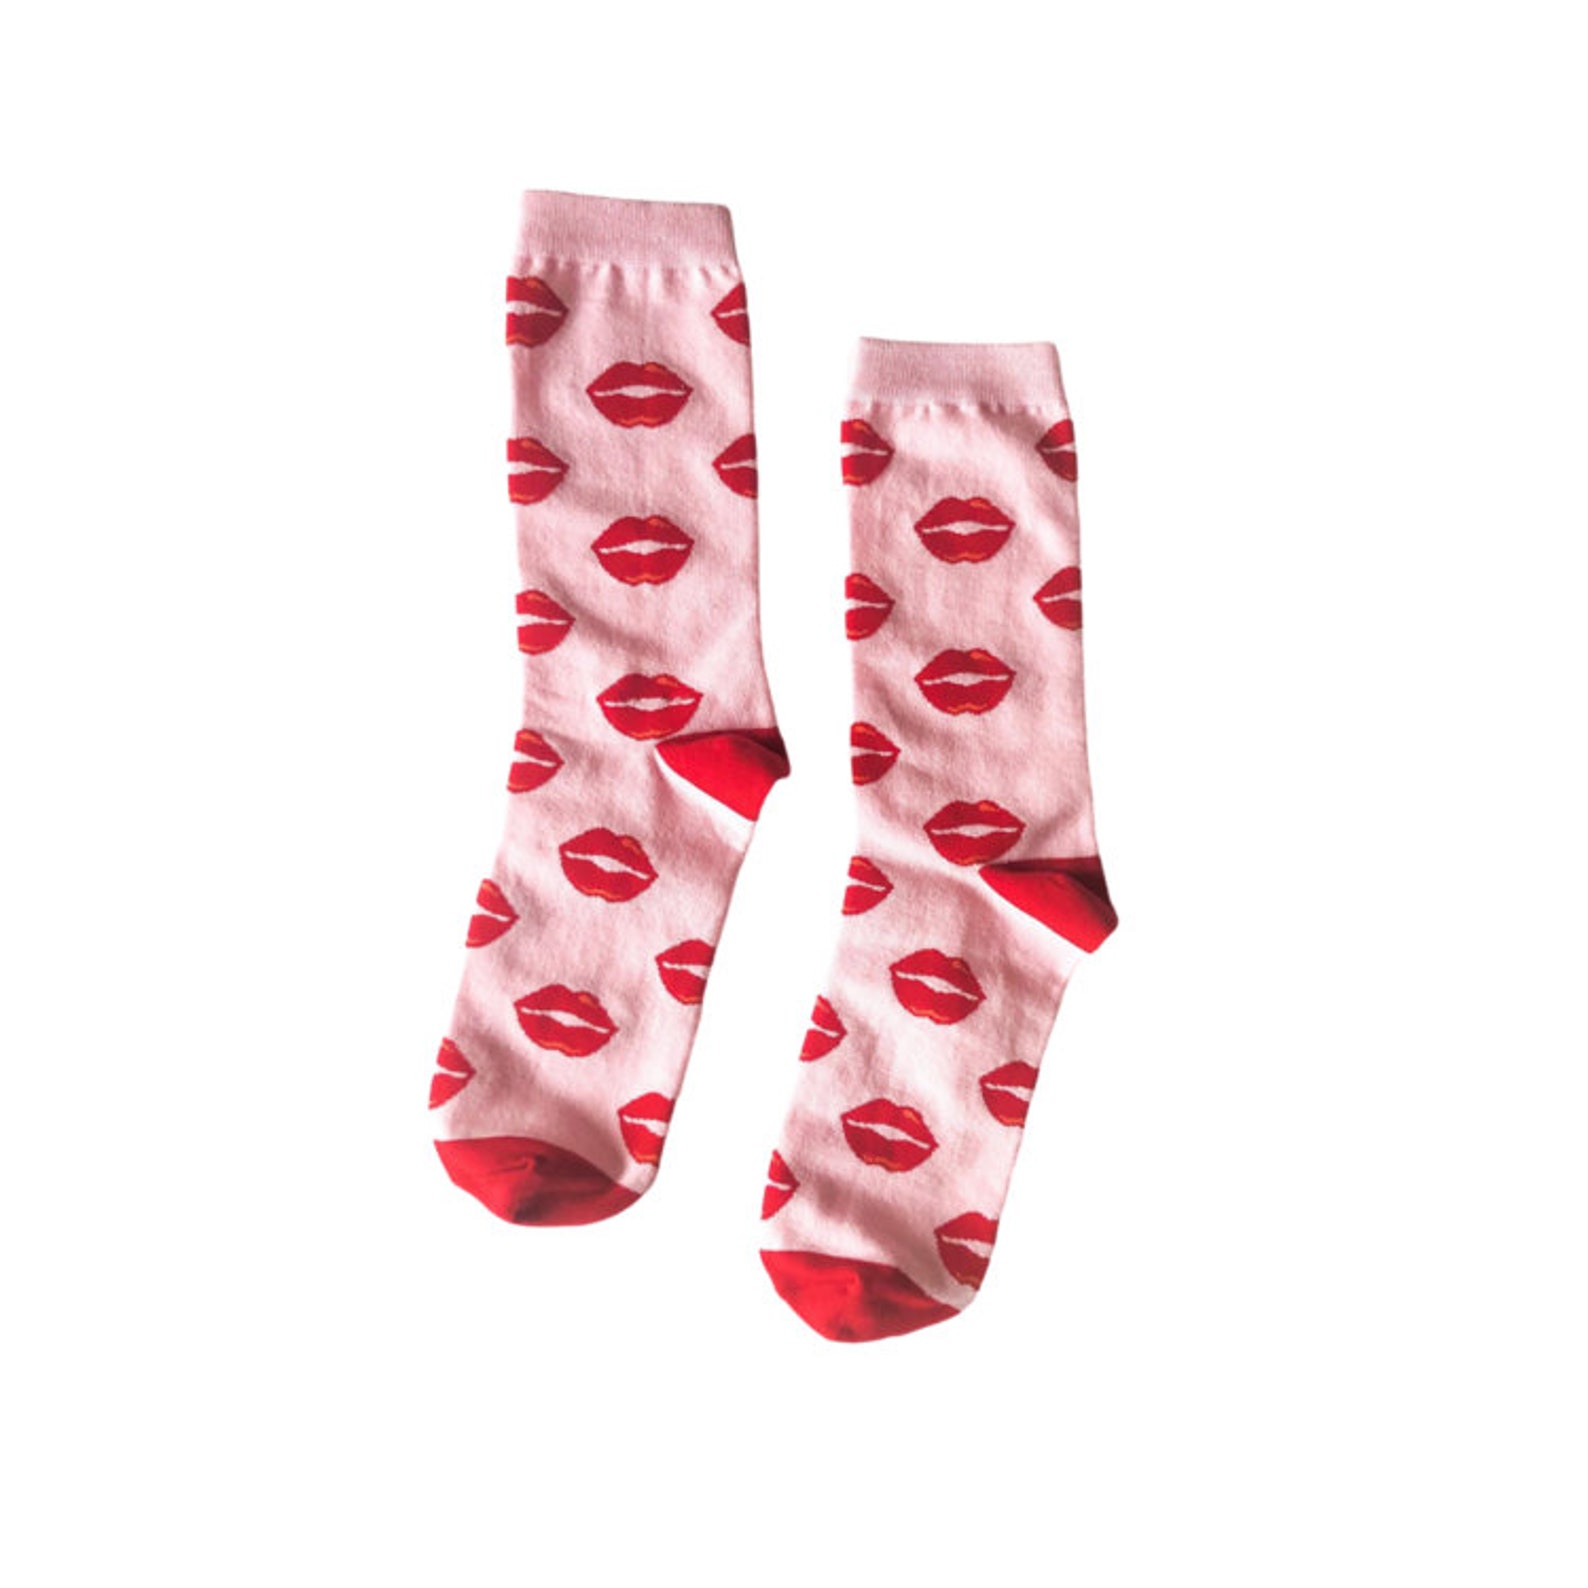 Kiss Socks Gift for Bride Bride Gift Alternative Wedding | Etsy